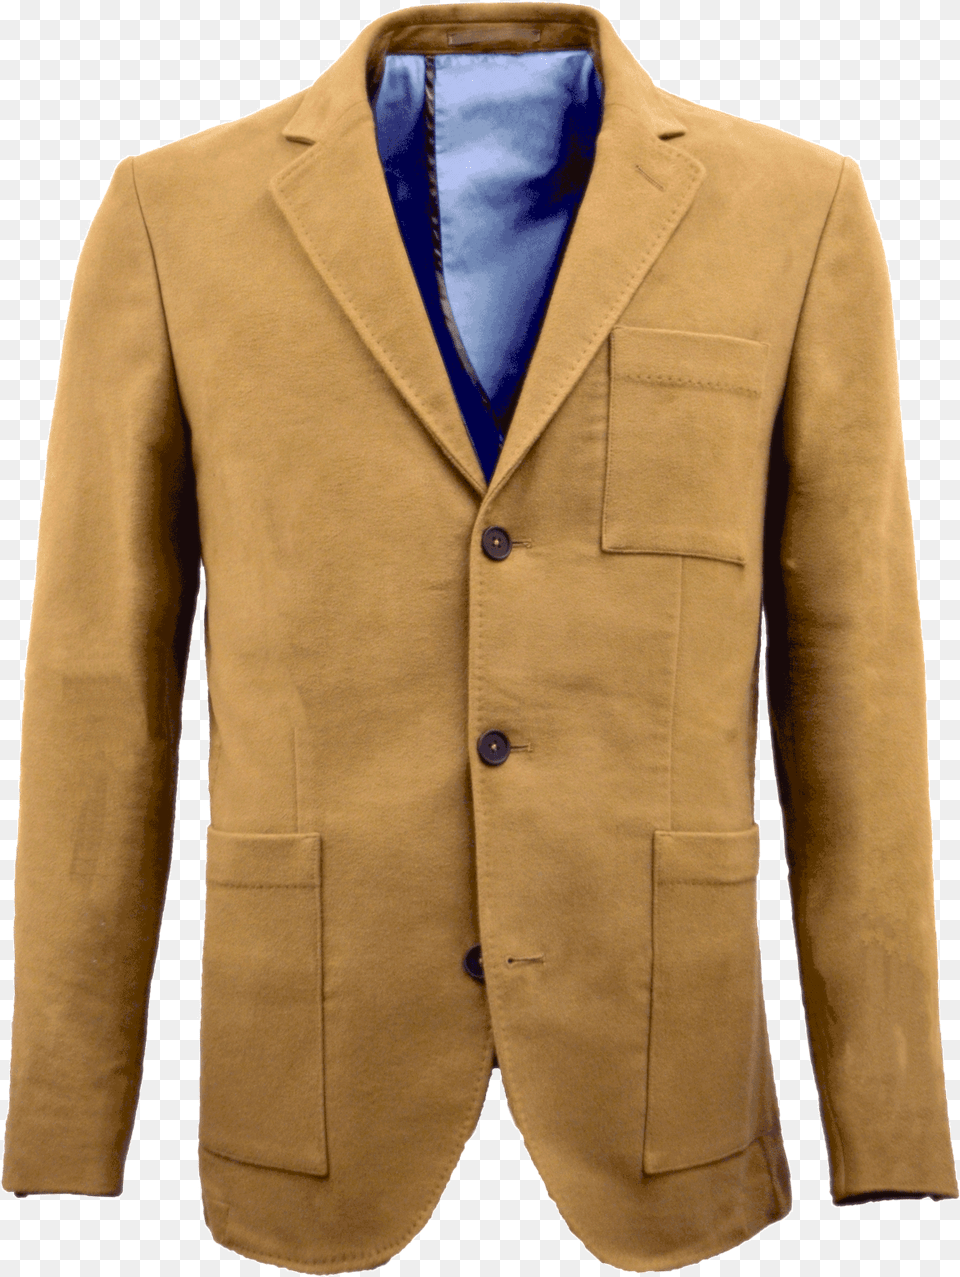 Formal Wear, Blazer, Clothing, Coat, Jacket Free Transparent Png